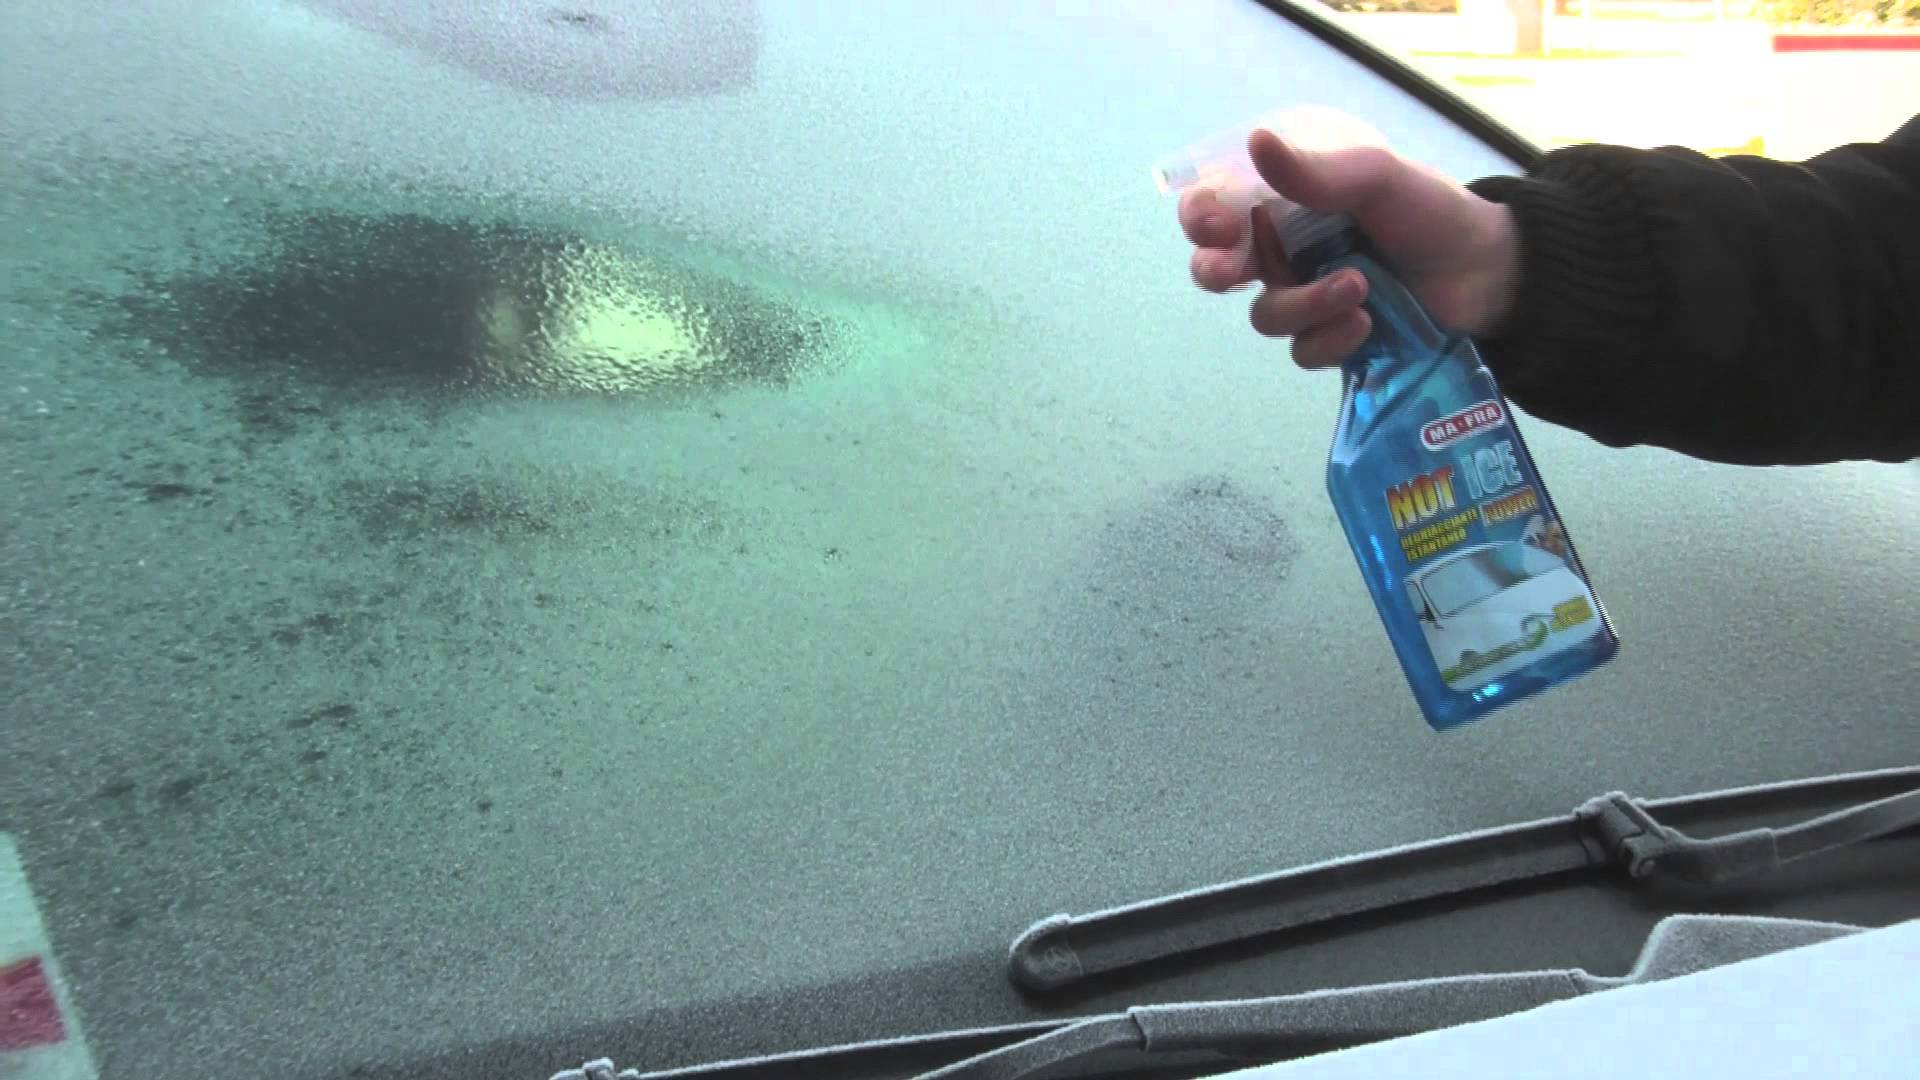 Parabrezza coperti di ghiaccio e serrature dell'auto che non si